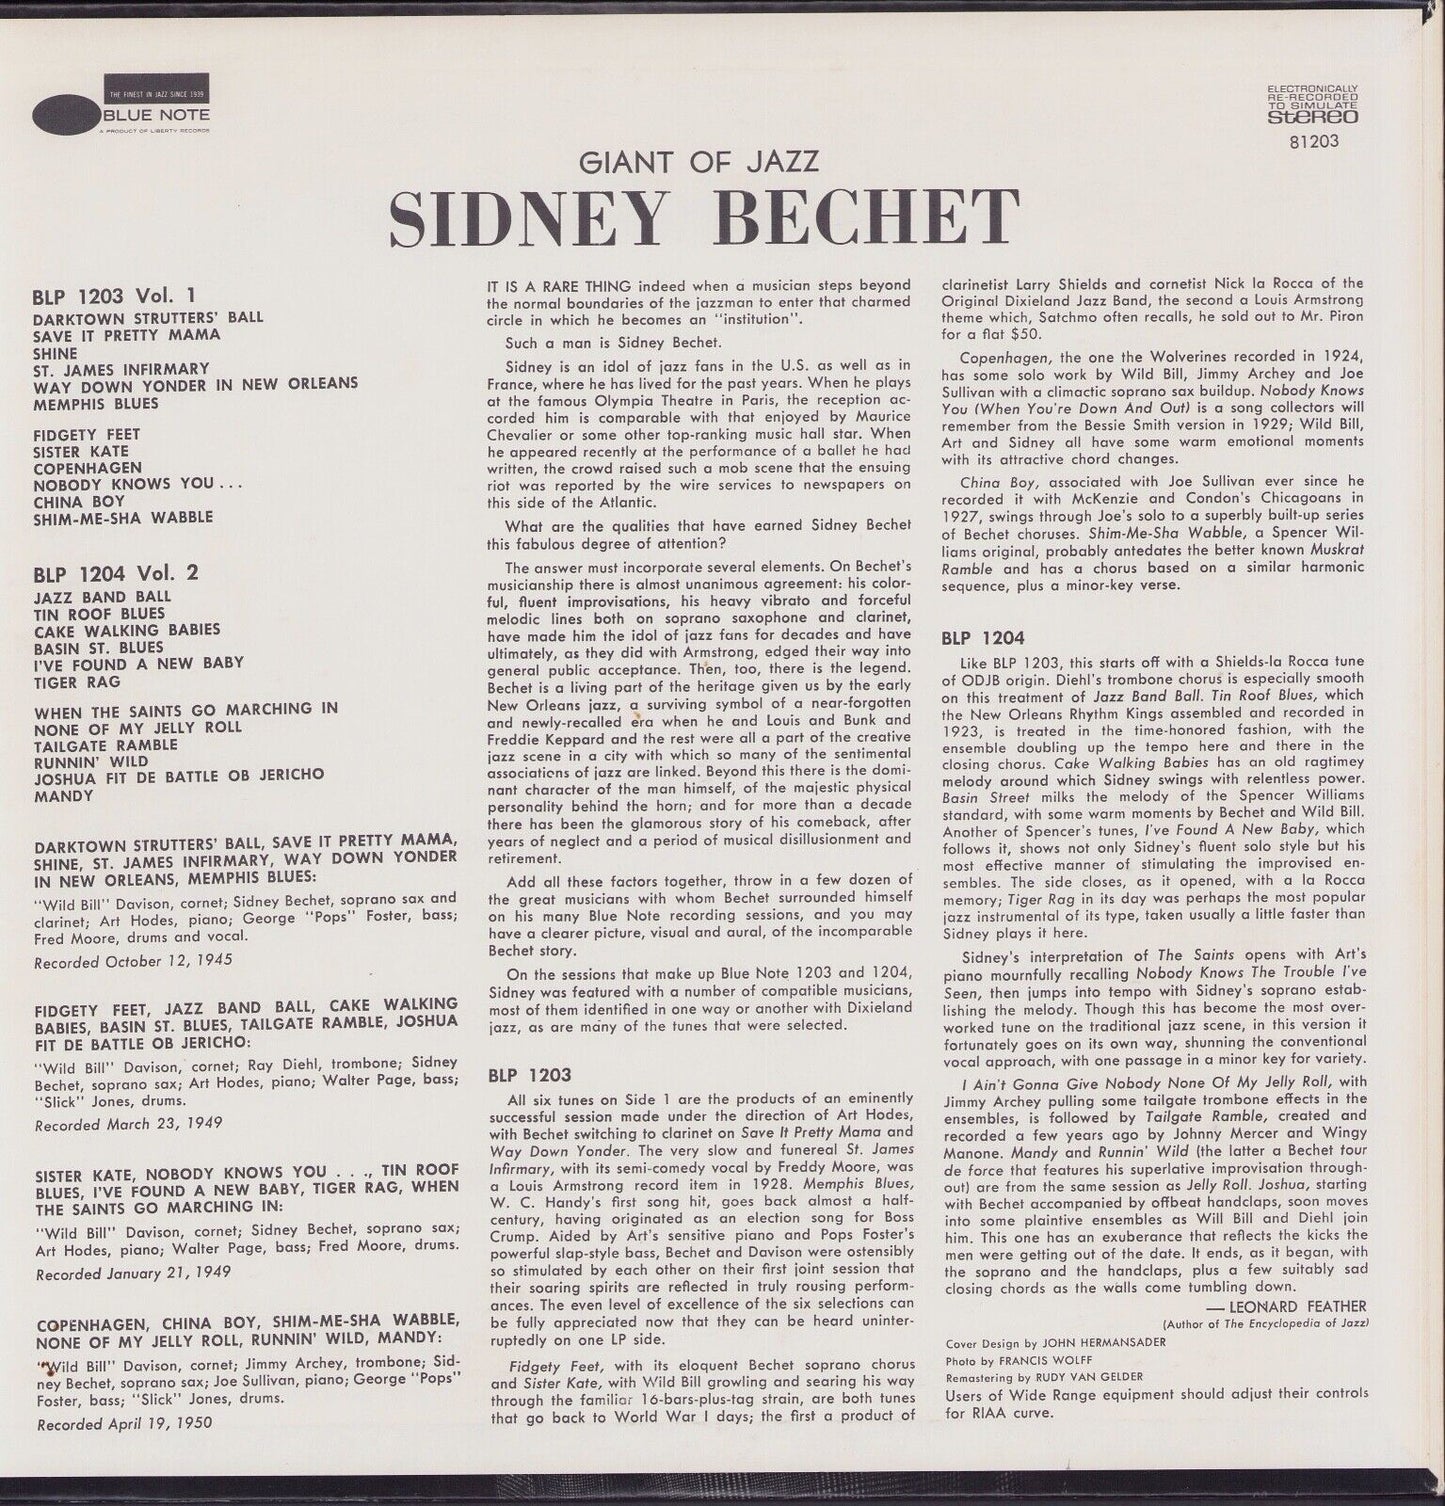 Sidney Bechet With "Wild Bill" Davison And Art Hodes - Volume 1 Vinyl LP